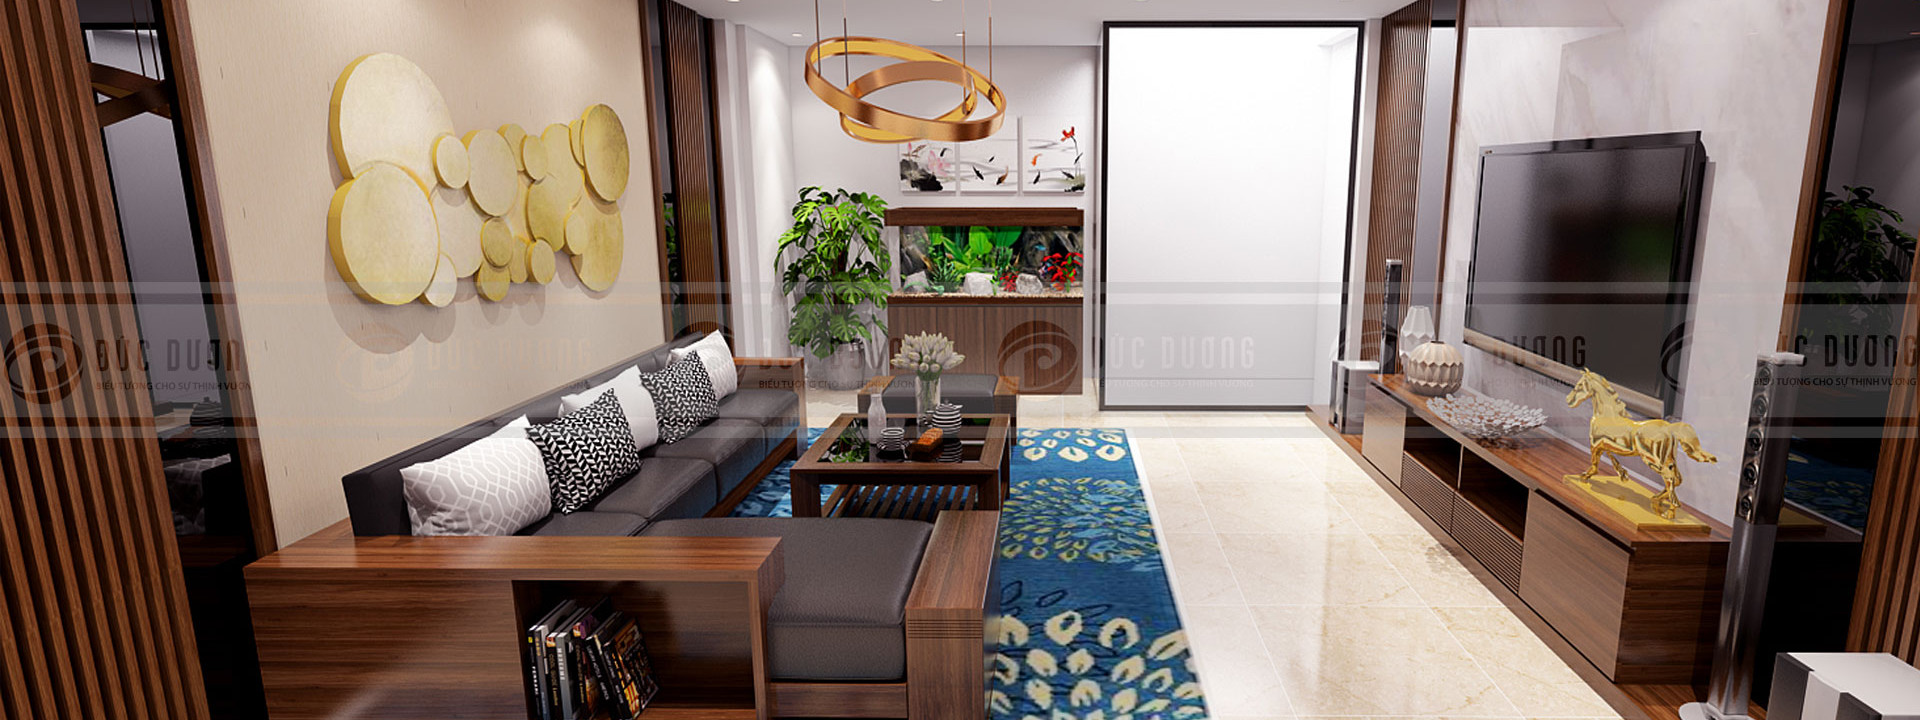 Tư vấn thiết kế nội thất căn hộ chung cư trọn gói uy tín tại Hà Nội